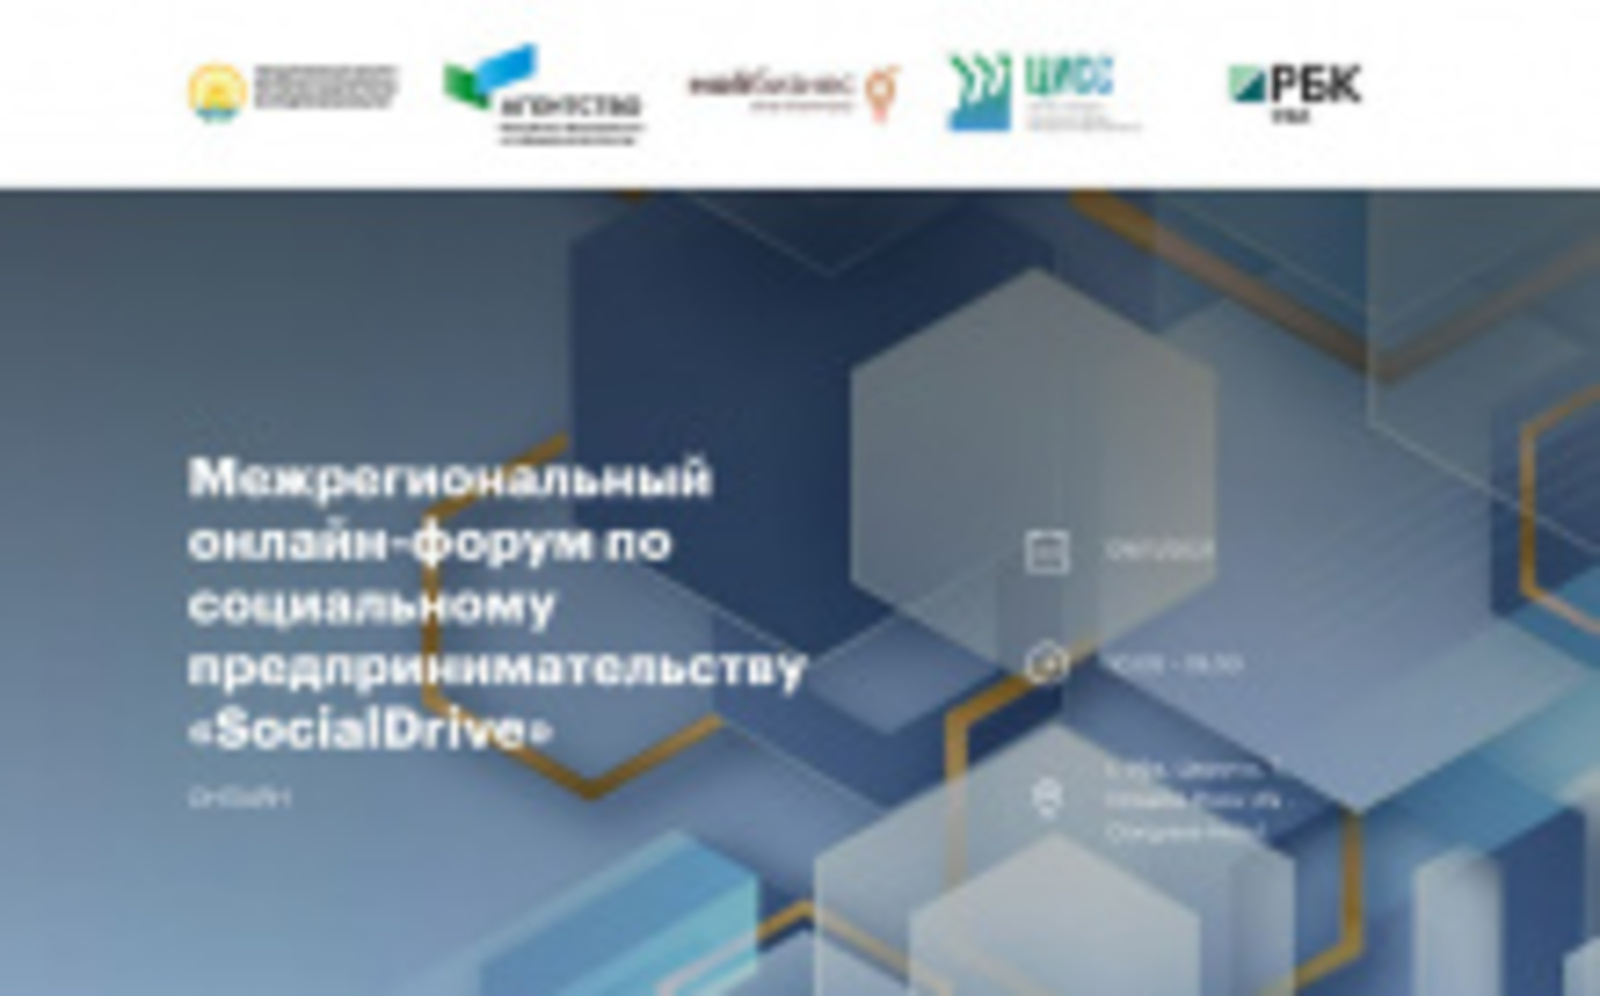 Столица Башкирии организует форум по социальному предпринимательству SocialDrive